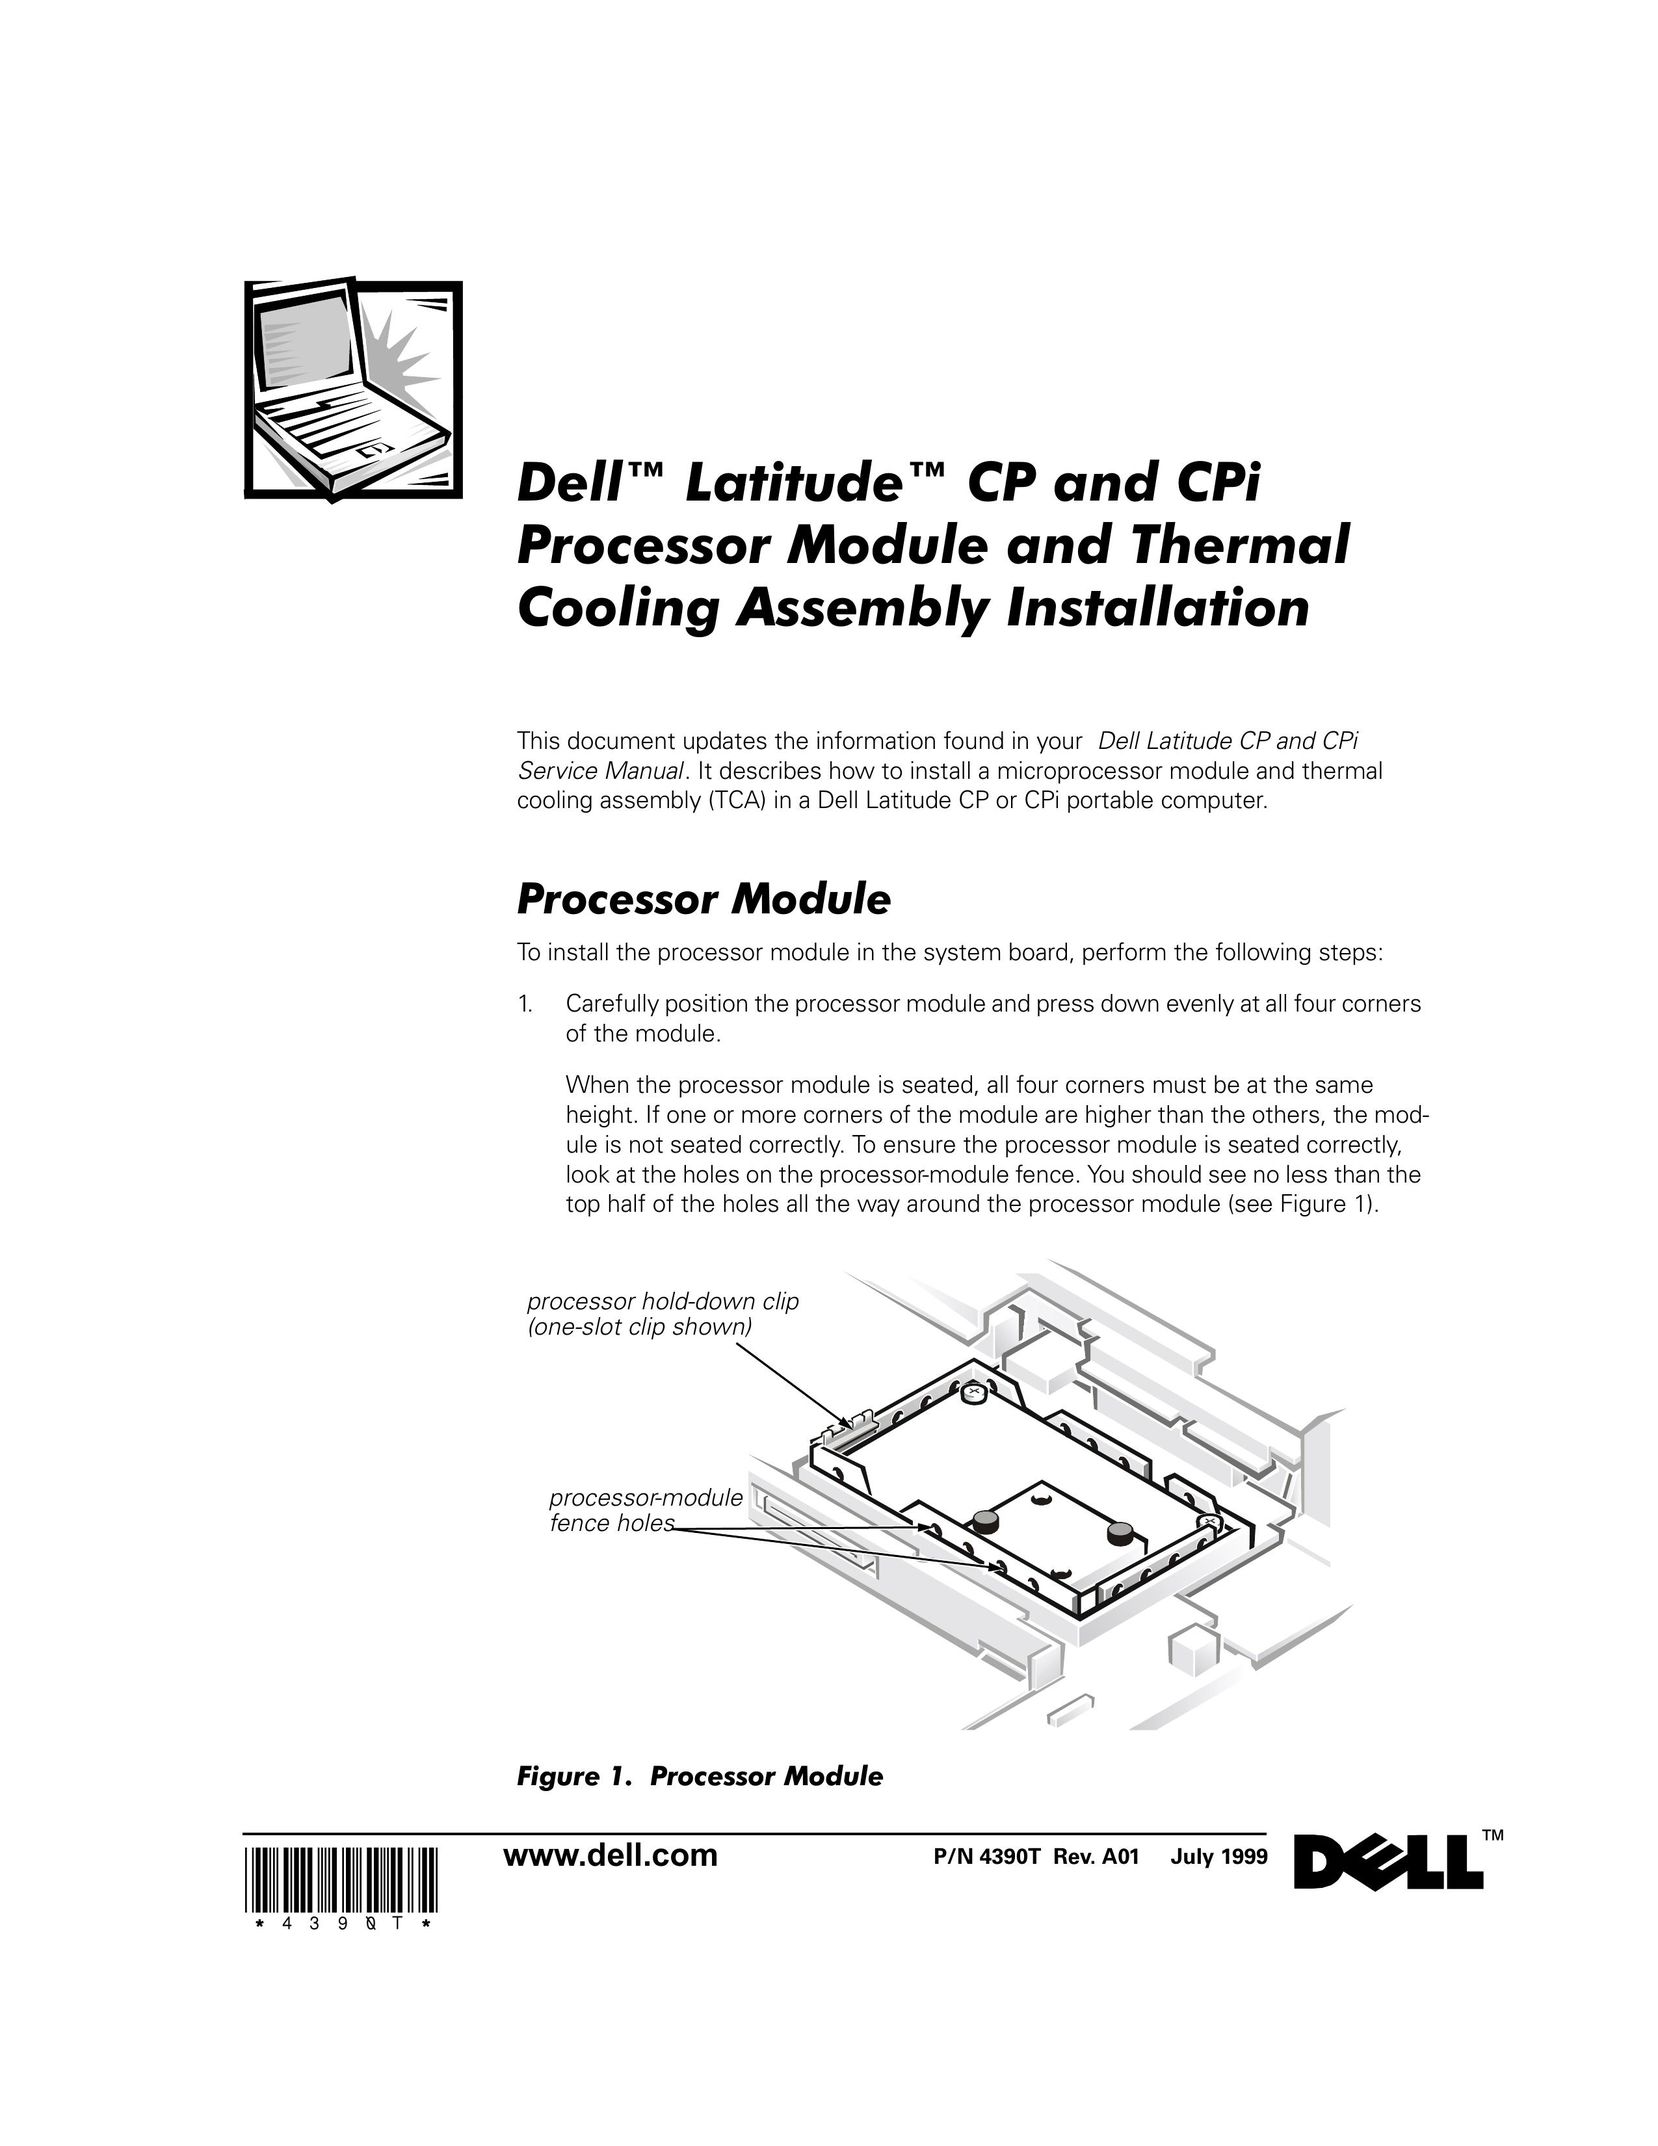 Dell CPI Computer Accessories User Manual